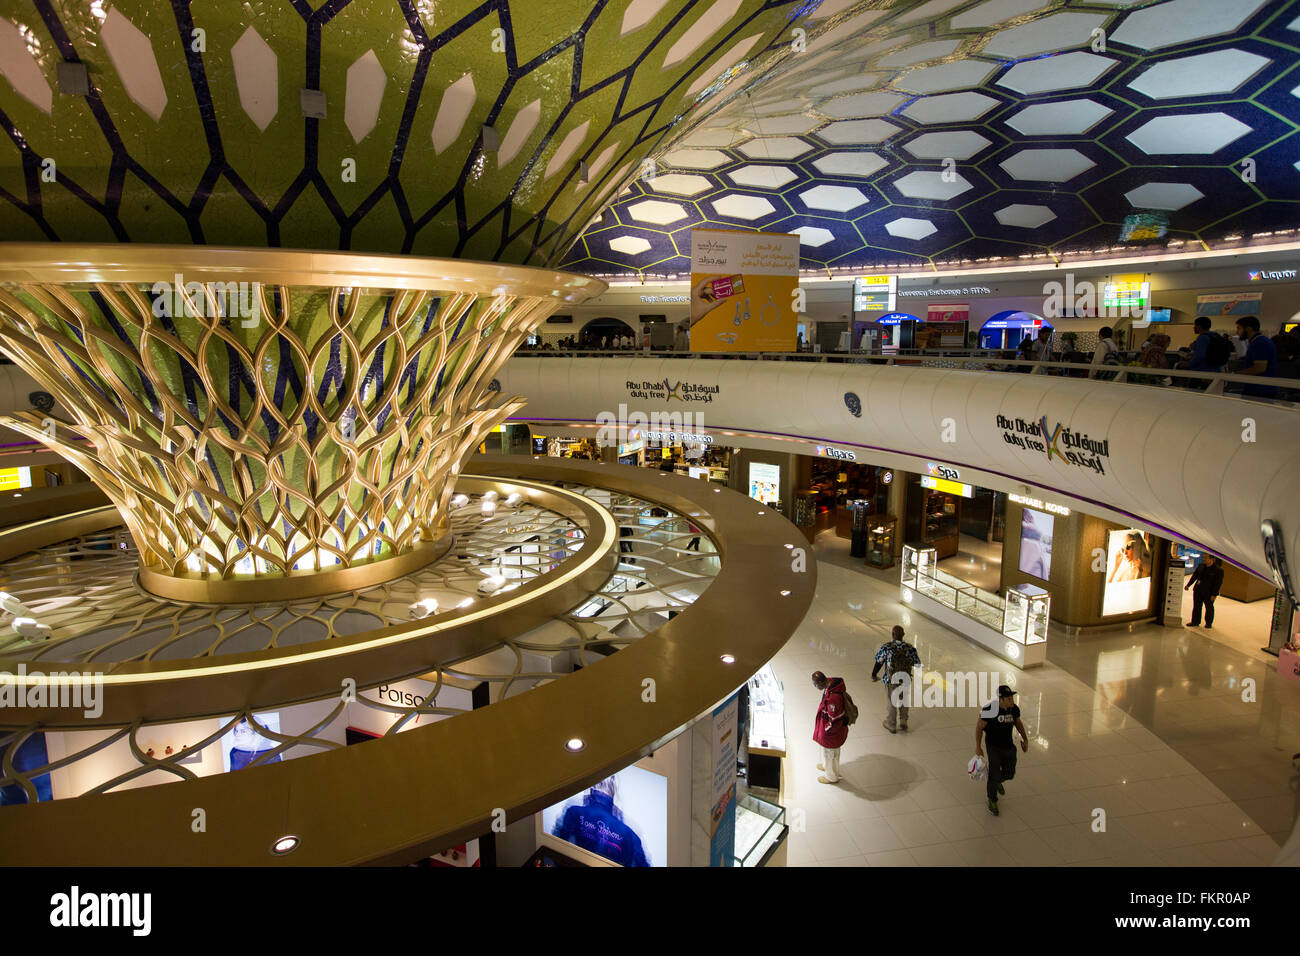 Emirats arabes unis, Abu Dhabi, l'aéroport, boutiques Duty free area Banque D'Images